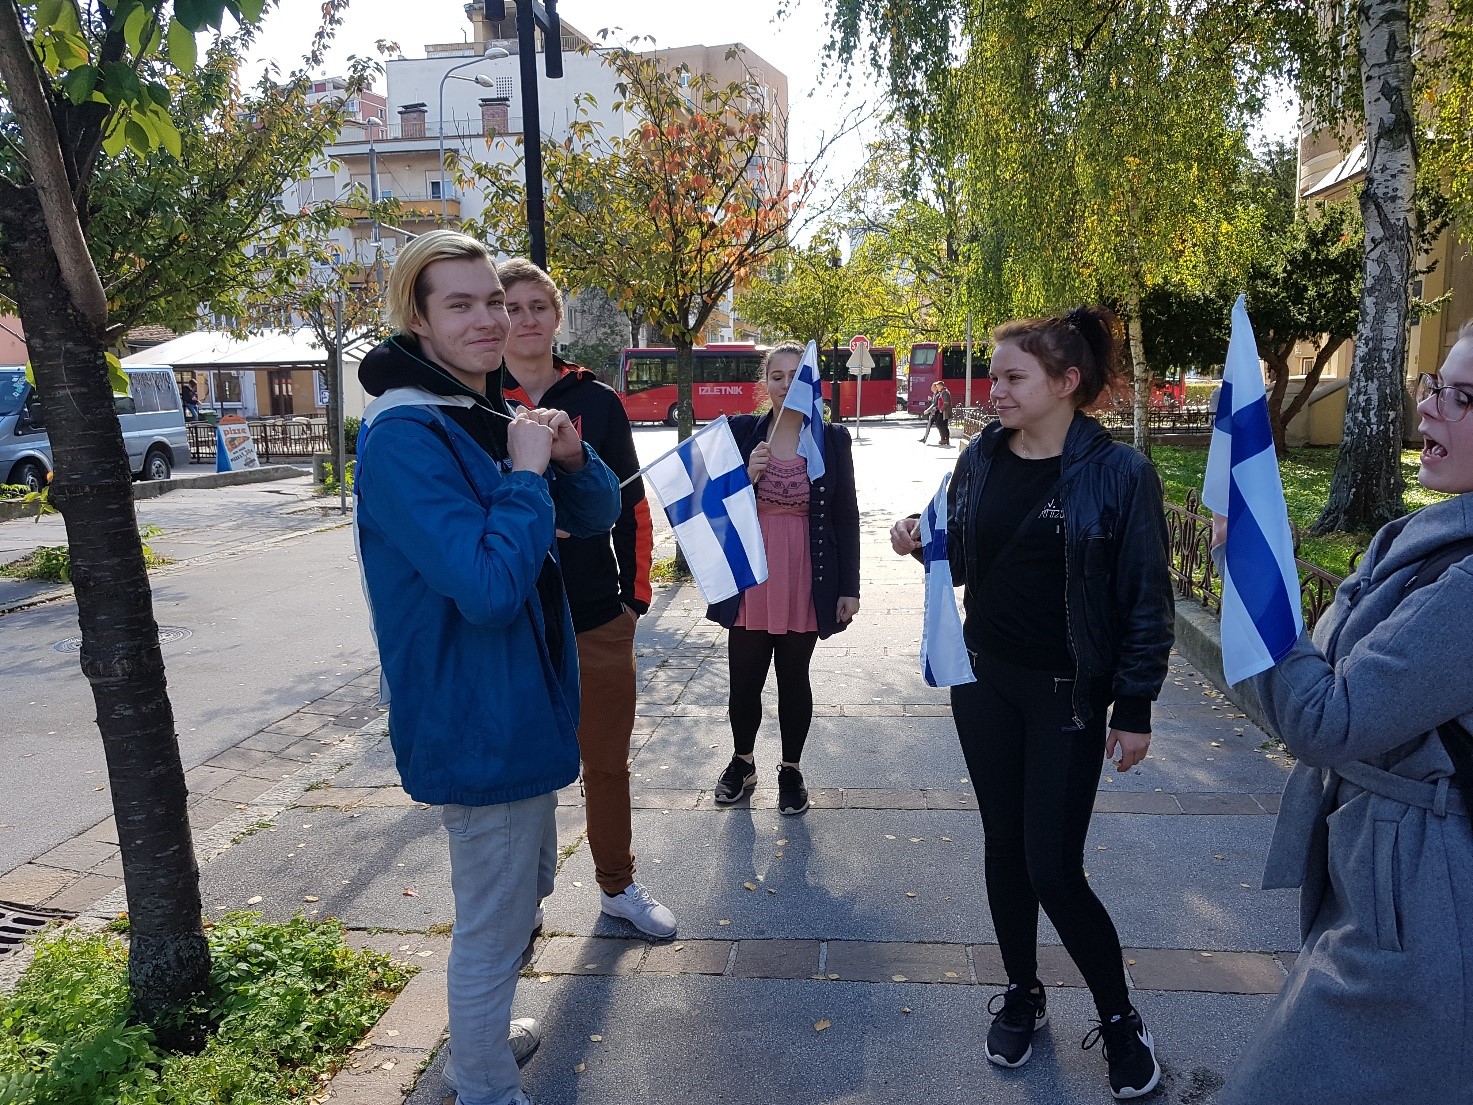 opiskelijoita pienet suomen liput käsissään ulkomailla